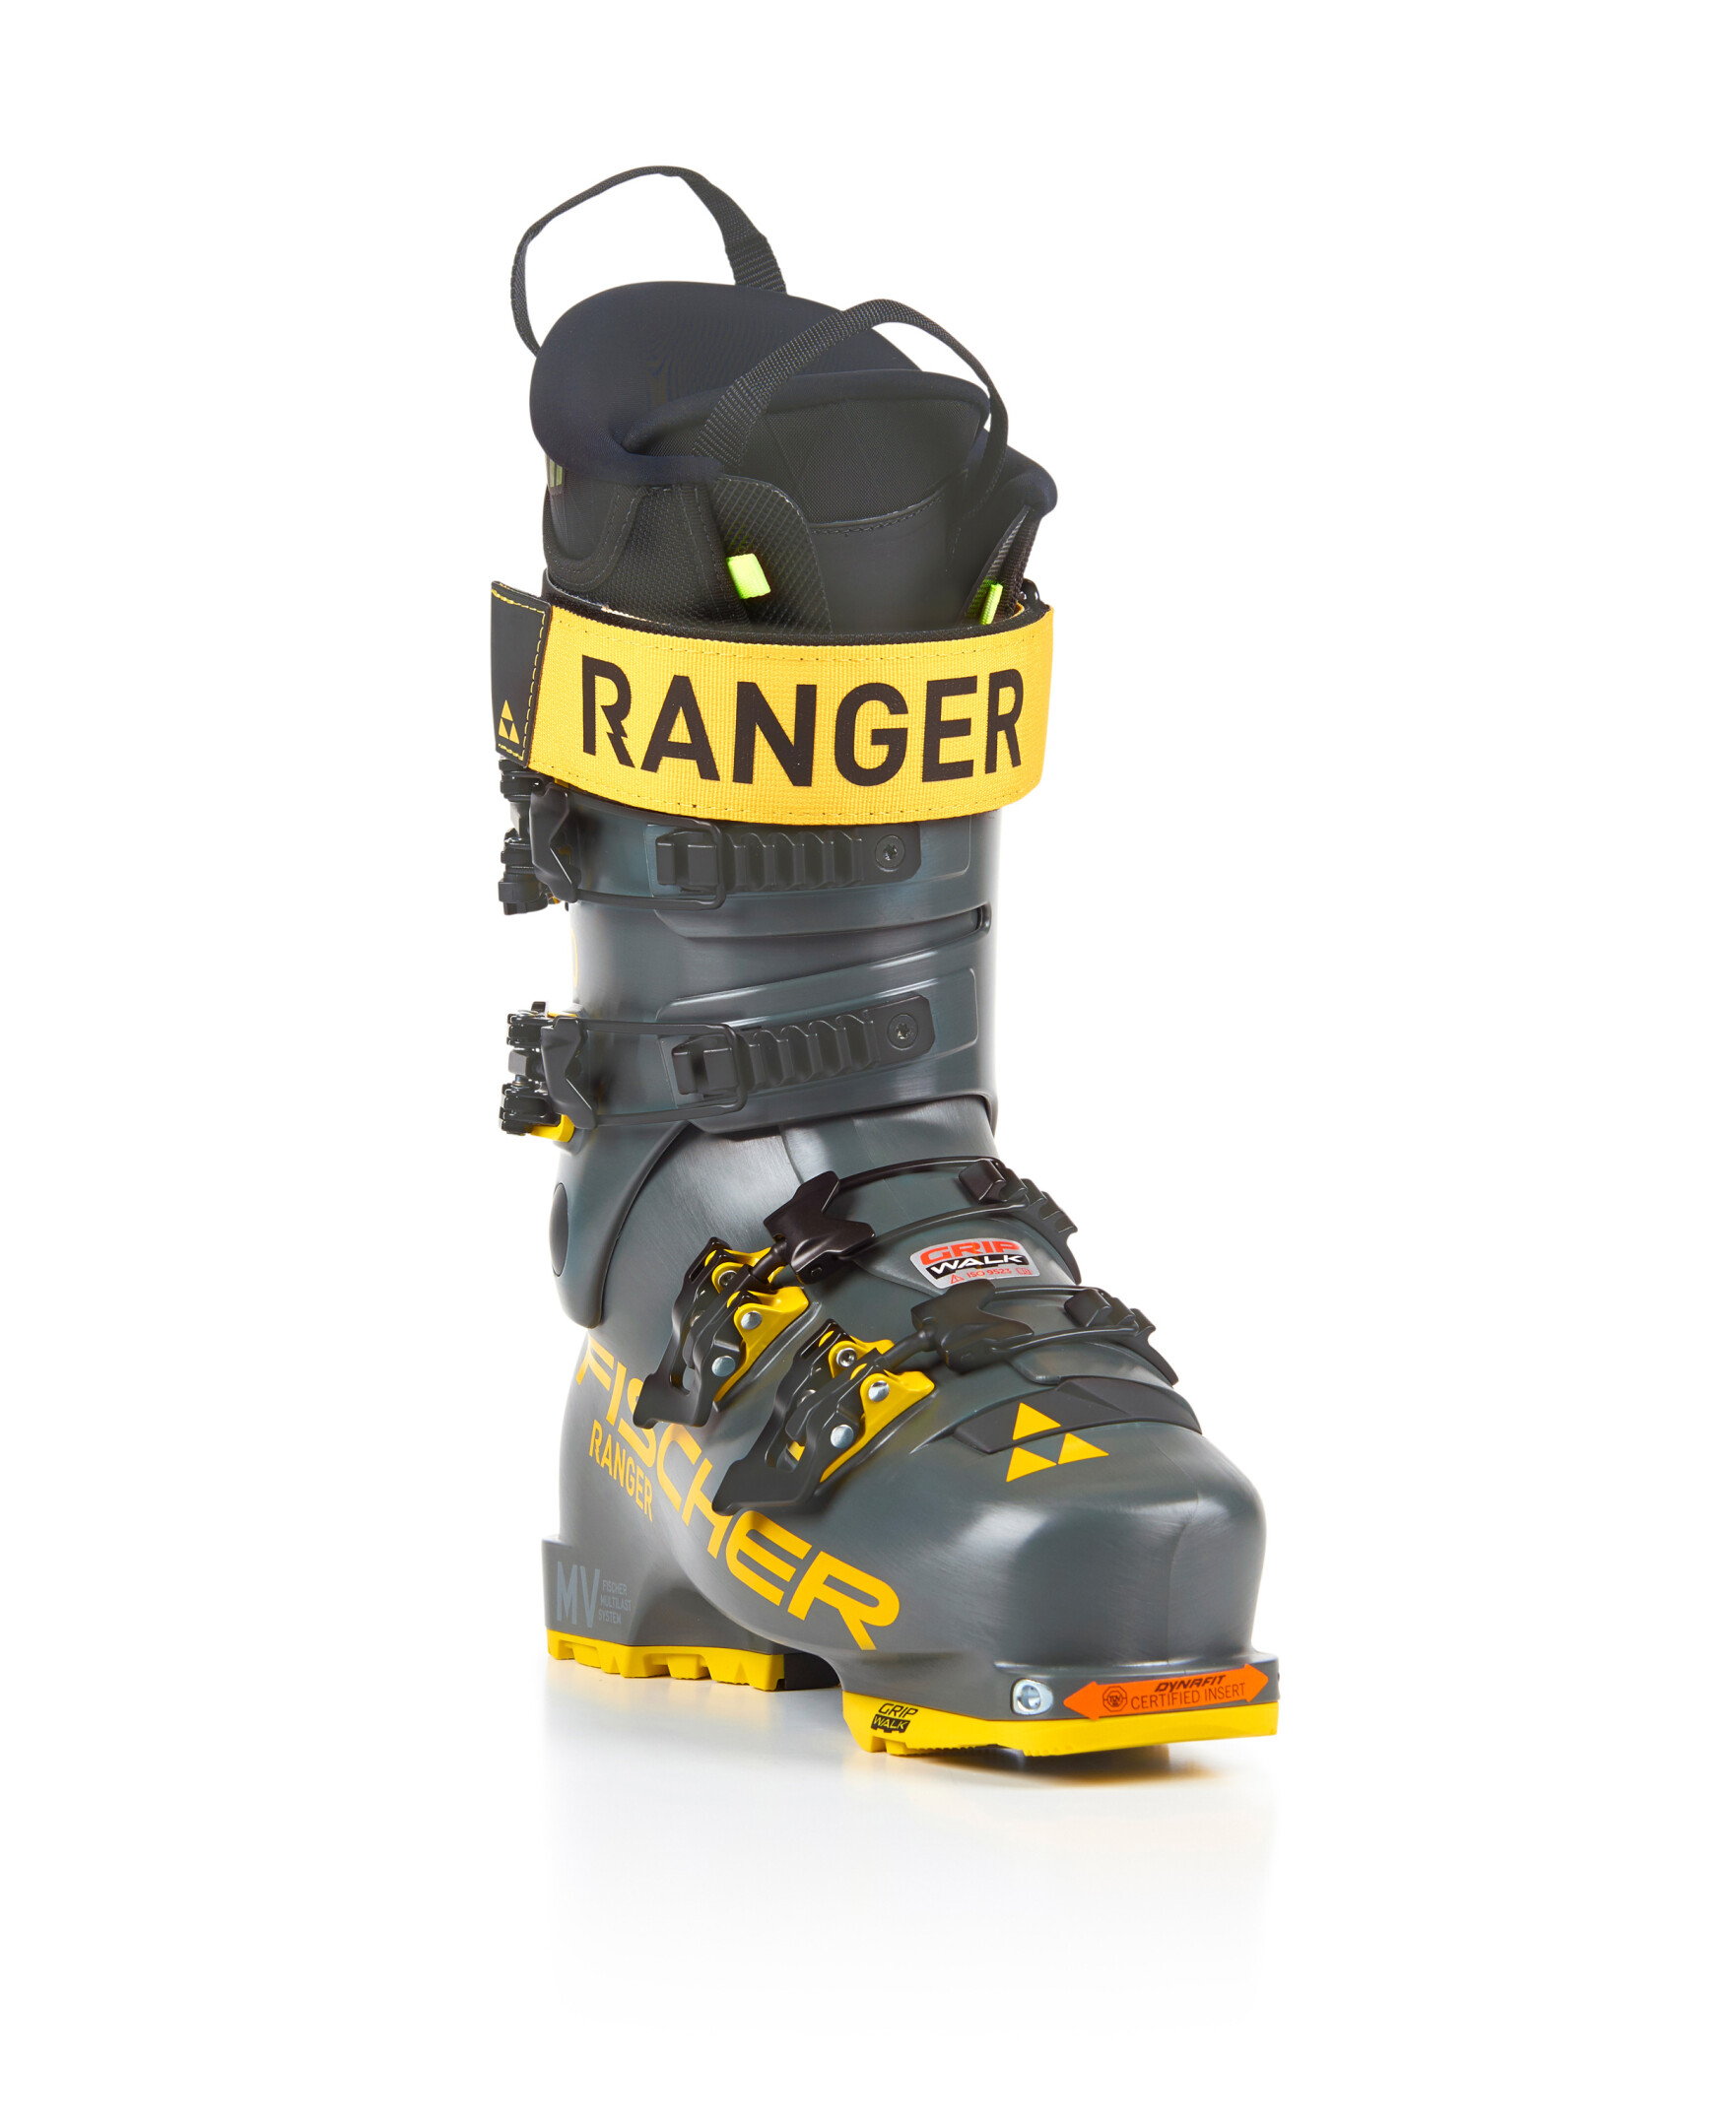 Ranger 120 DYN | Fischersports - United States (English)